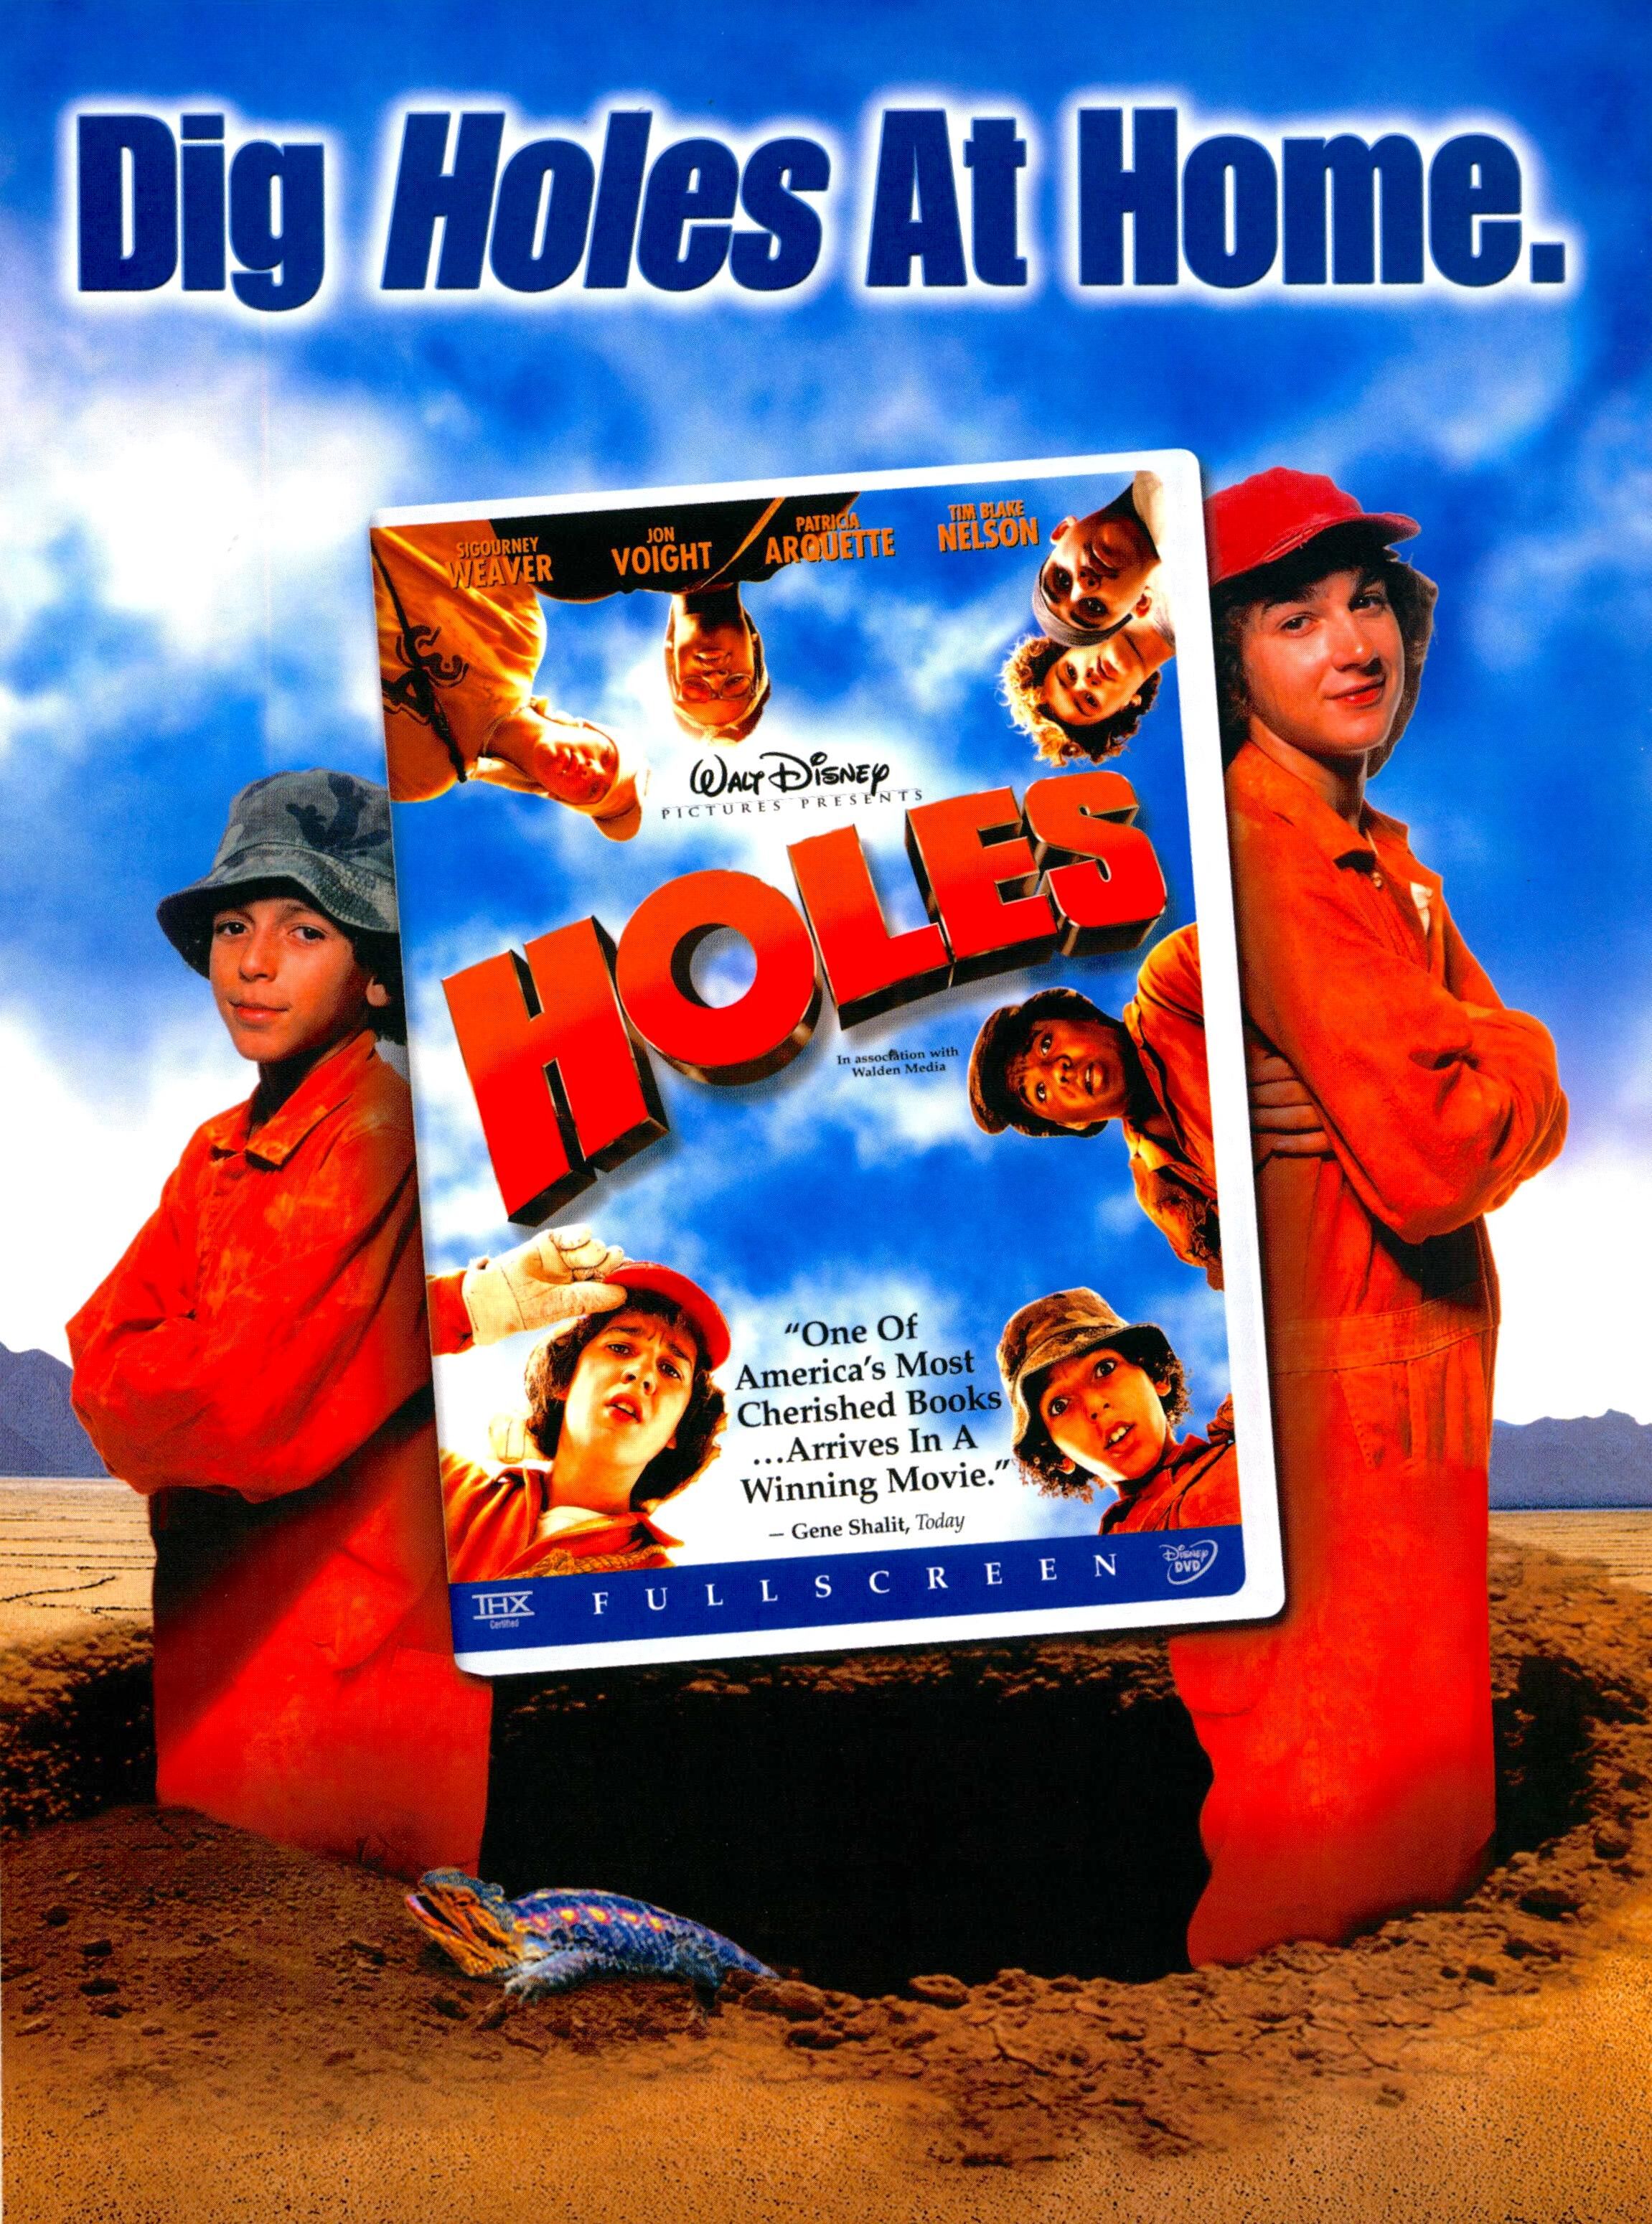 holes by louis sachar dvd